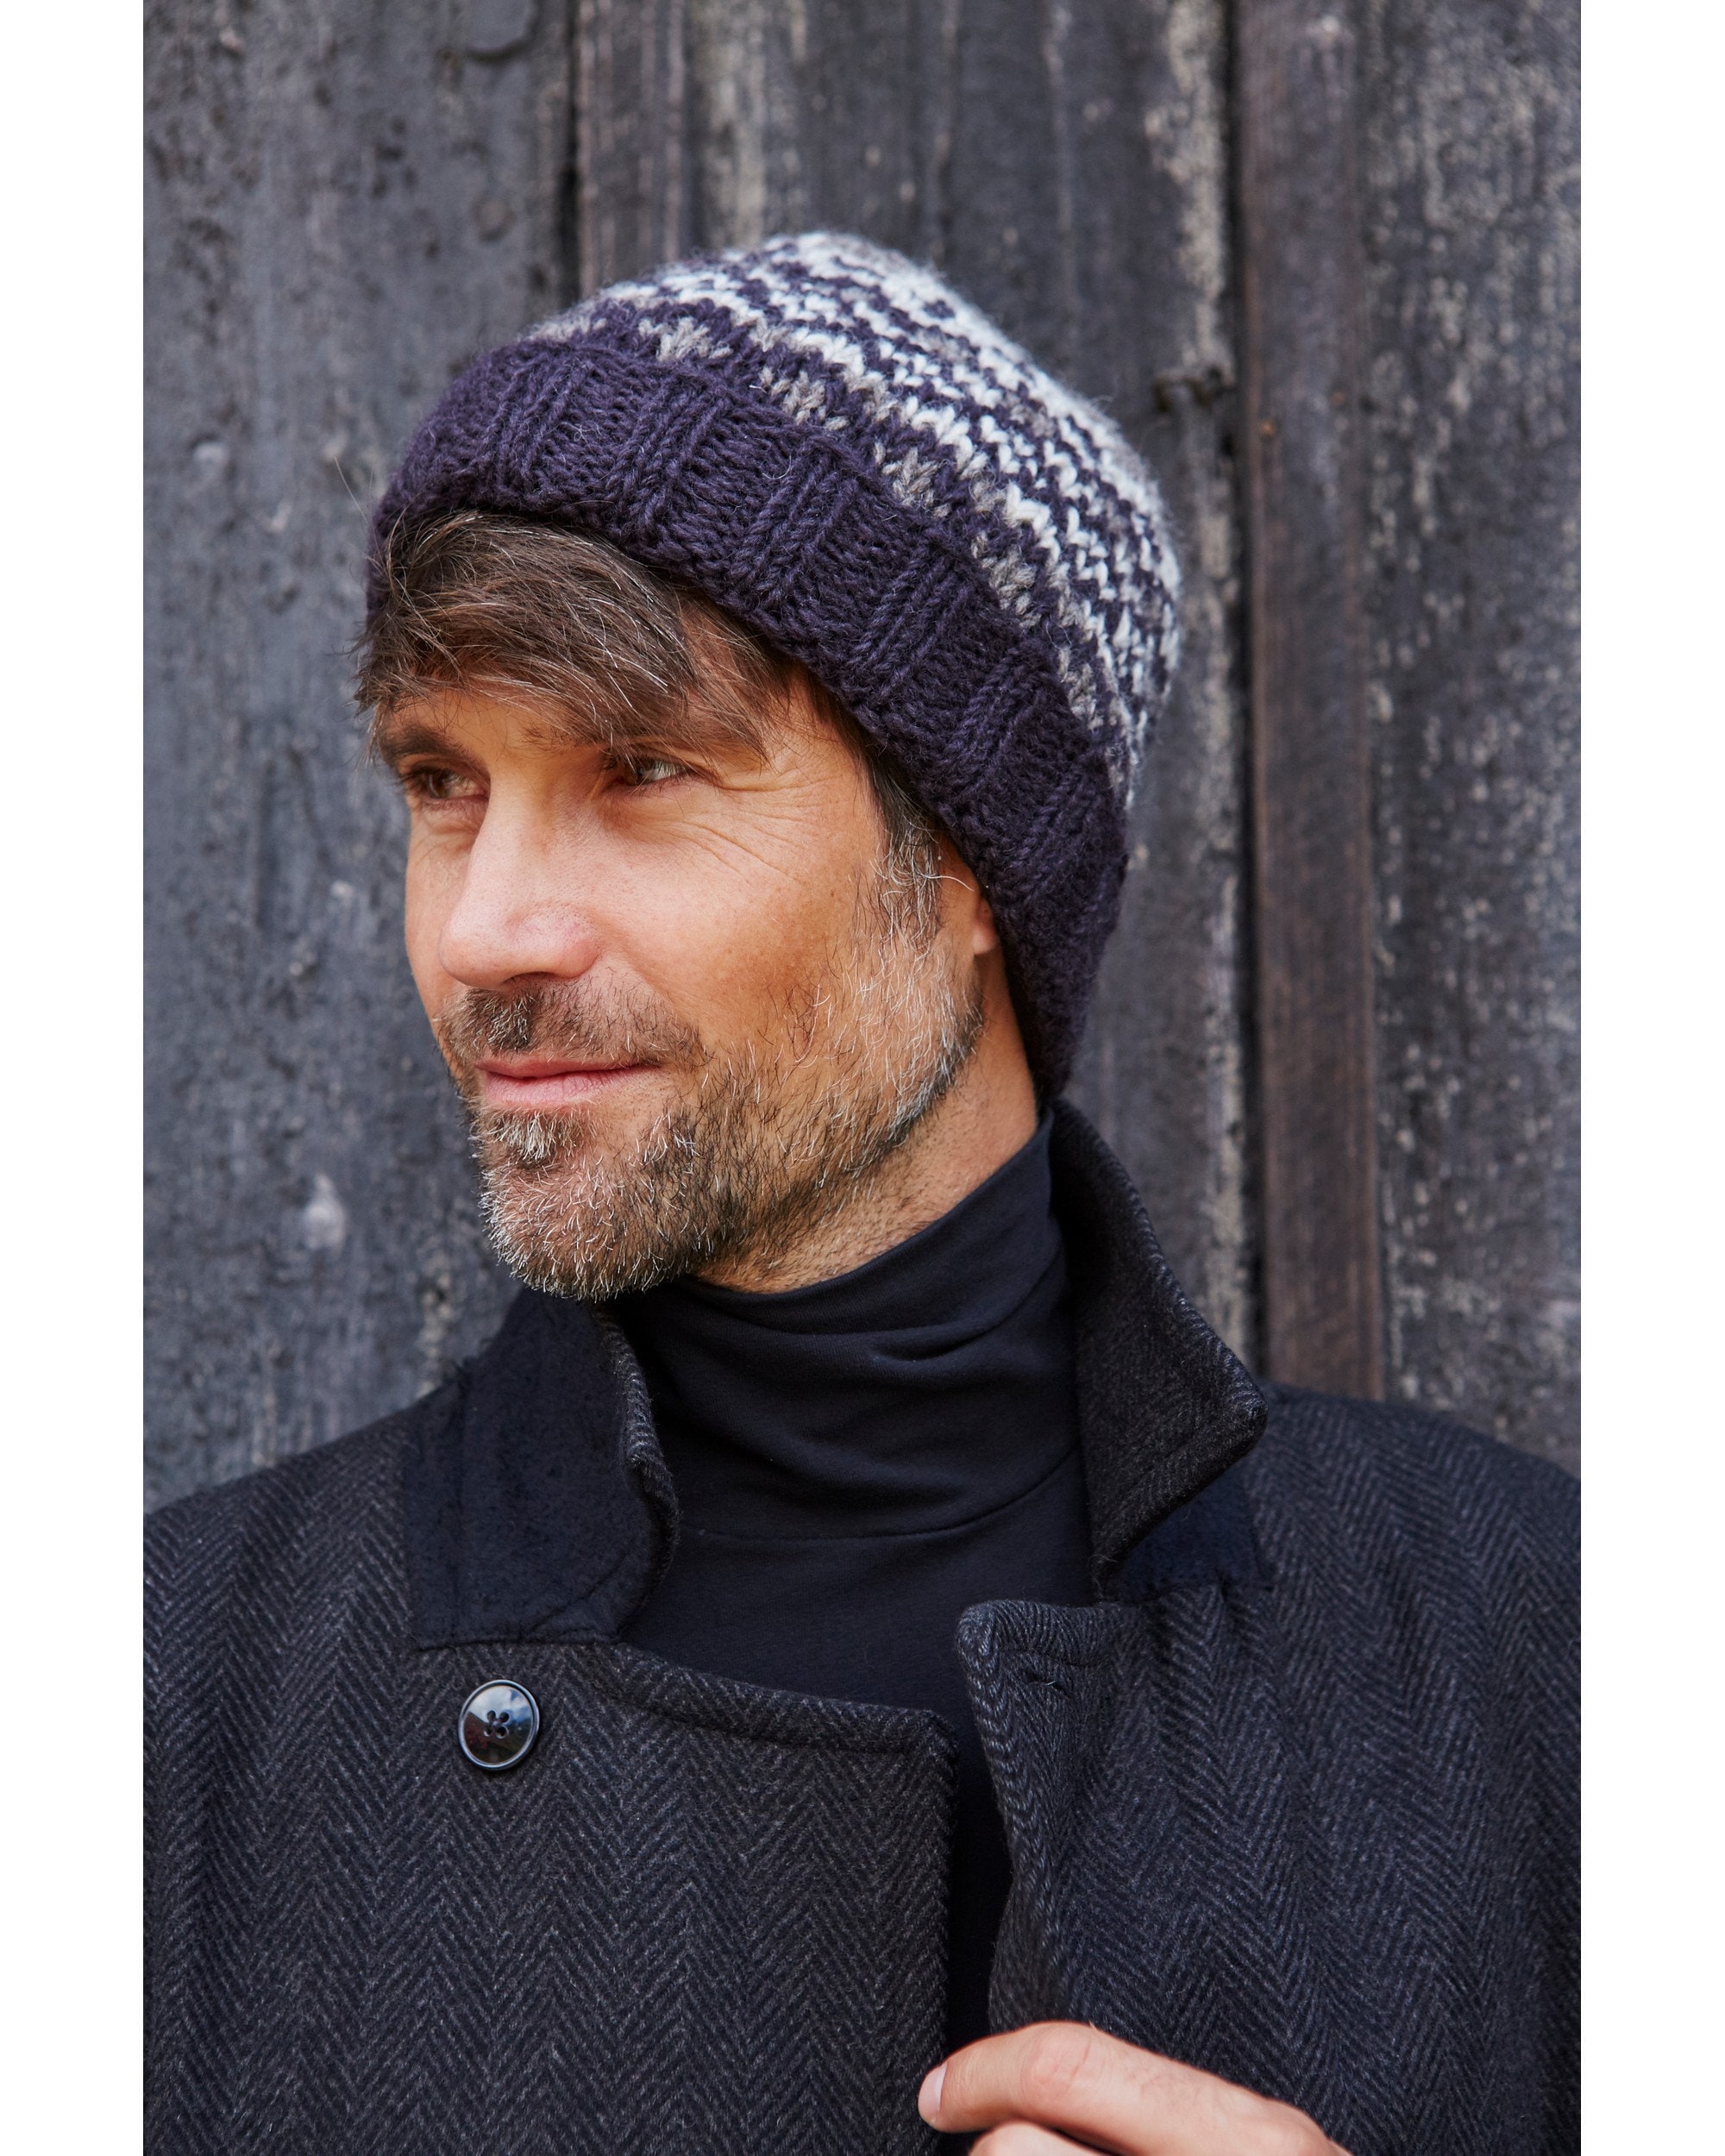 Bonnet tricoté à la main pour hommes, 100% laine, chapeau dhiver